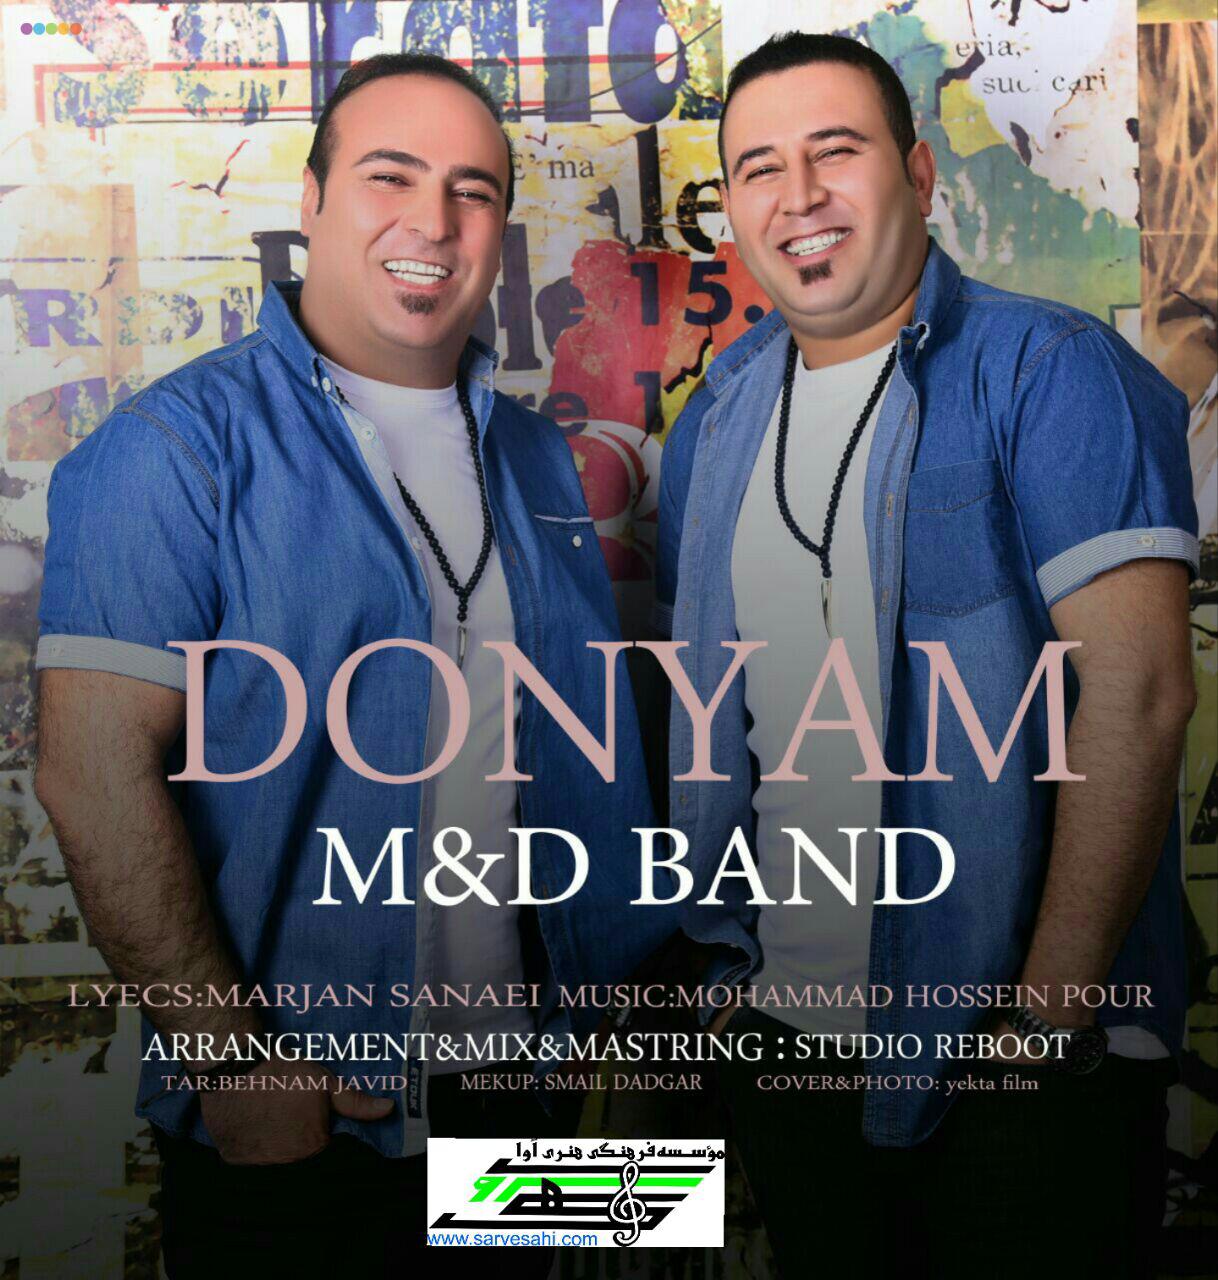  دانلود آهنگ جدید ام اند دی باند - دنیام | Download New Music By M&D Band - Donyam